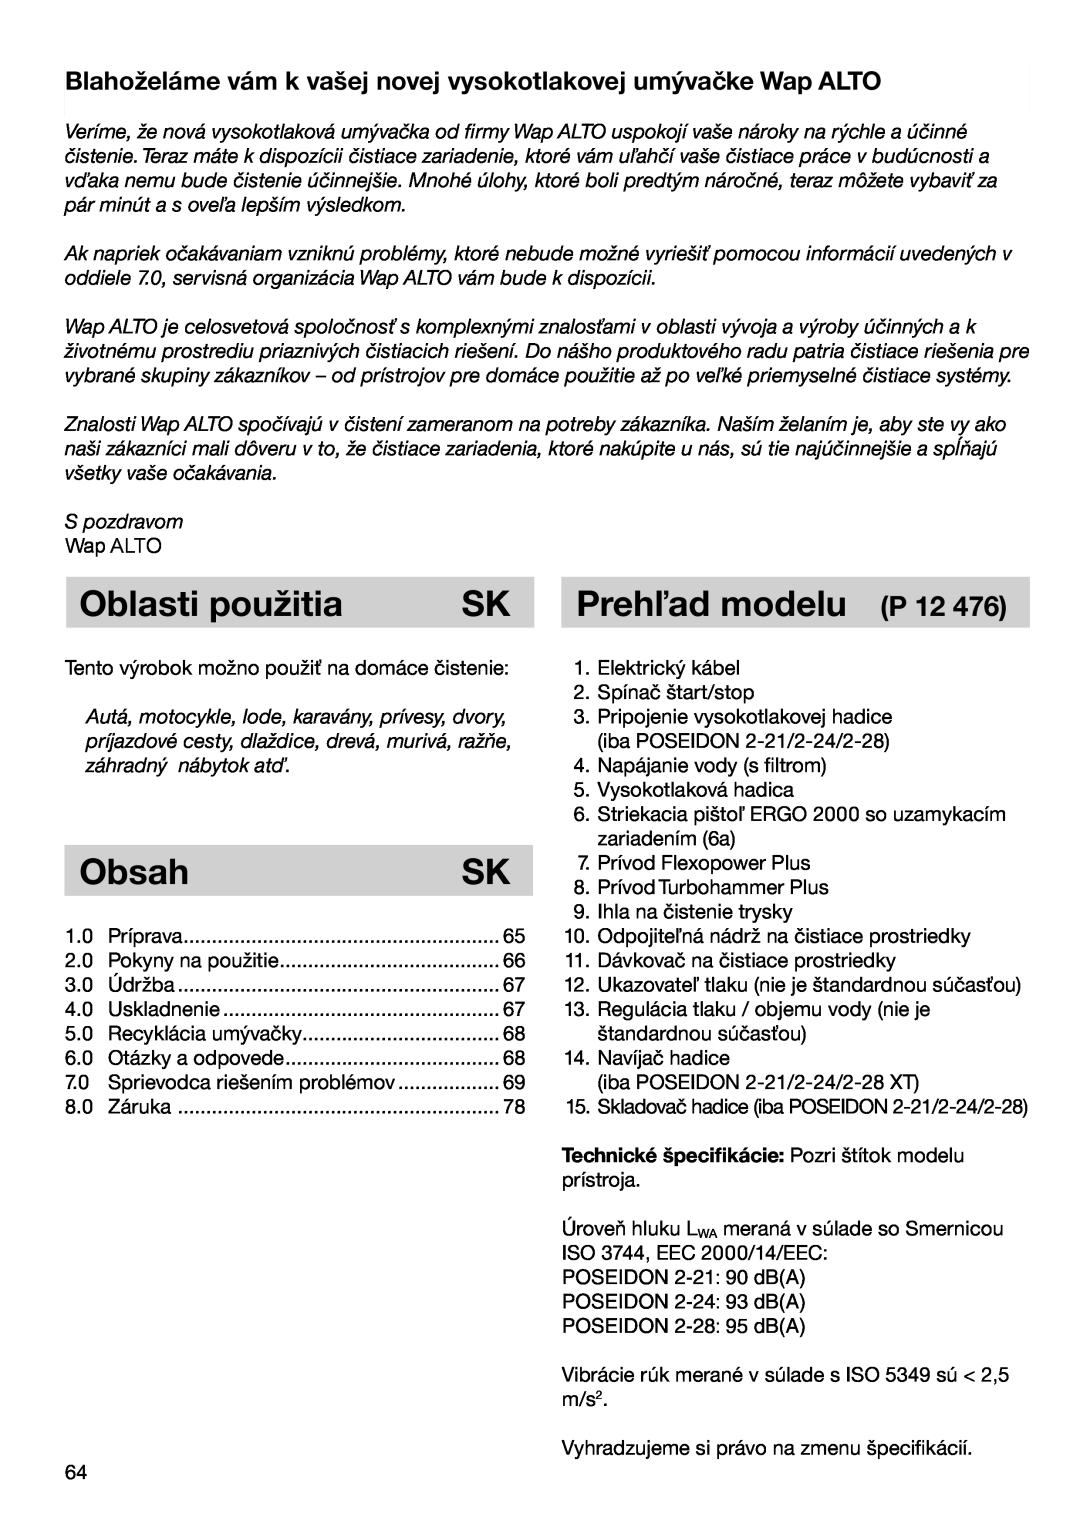 Nilfisk-ALTO 2-19 X, 2-24, 2-28, 2-21 instruction manual Oblasti použitia, Obsah, Prehľad modelu P 12 